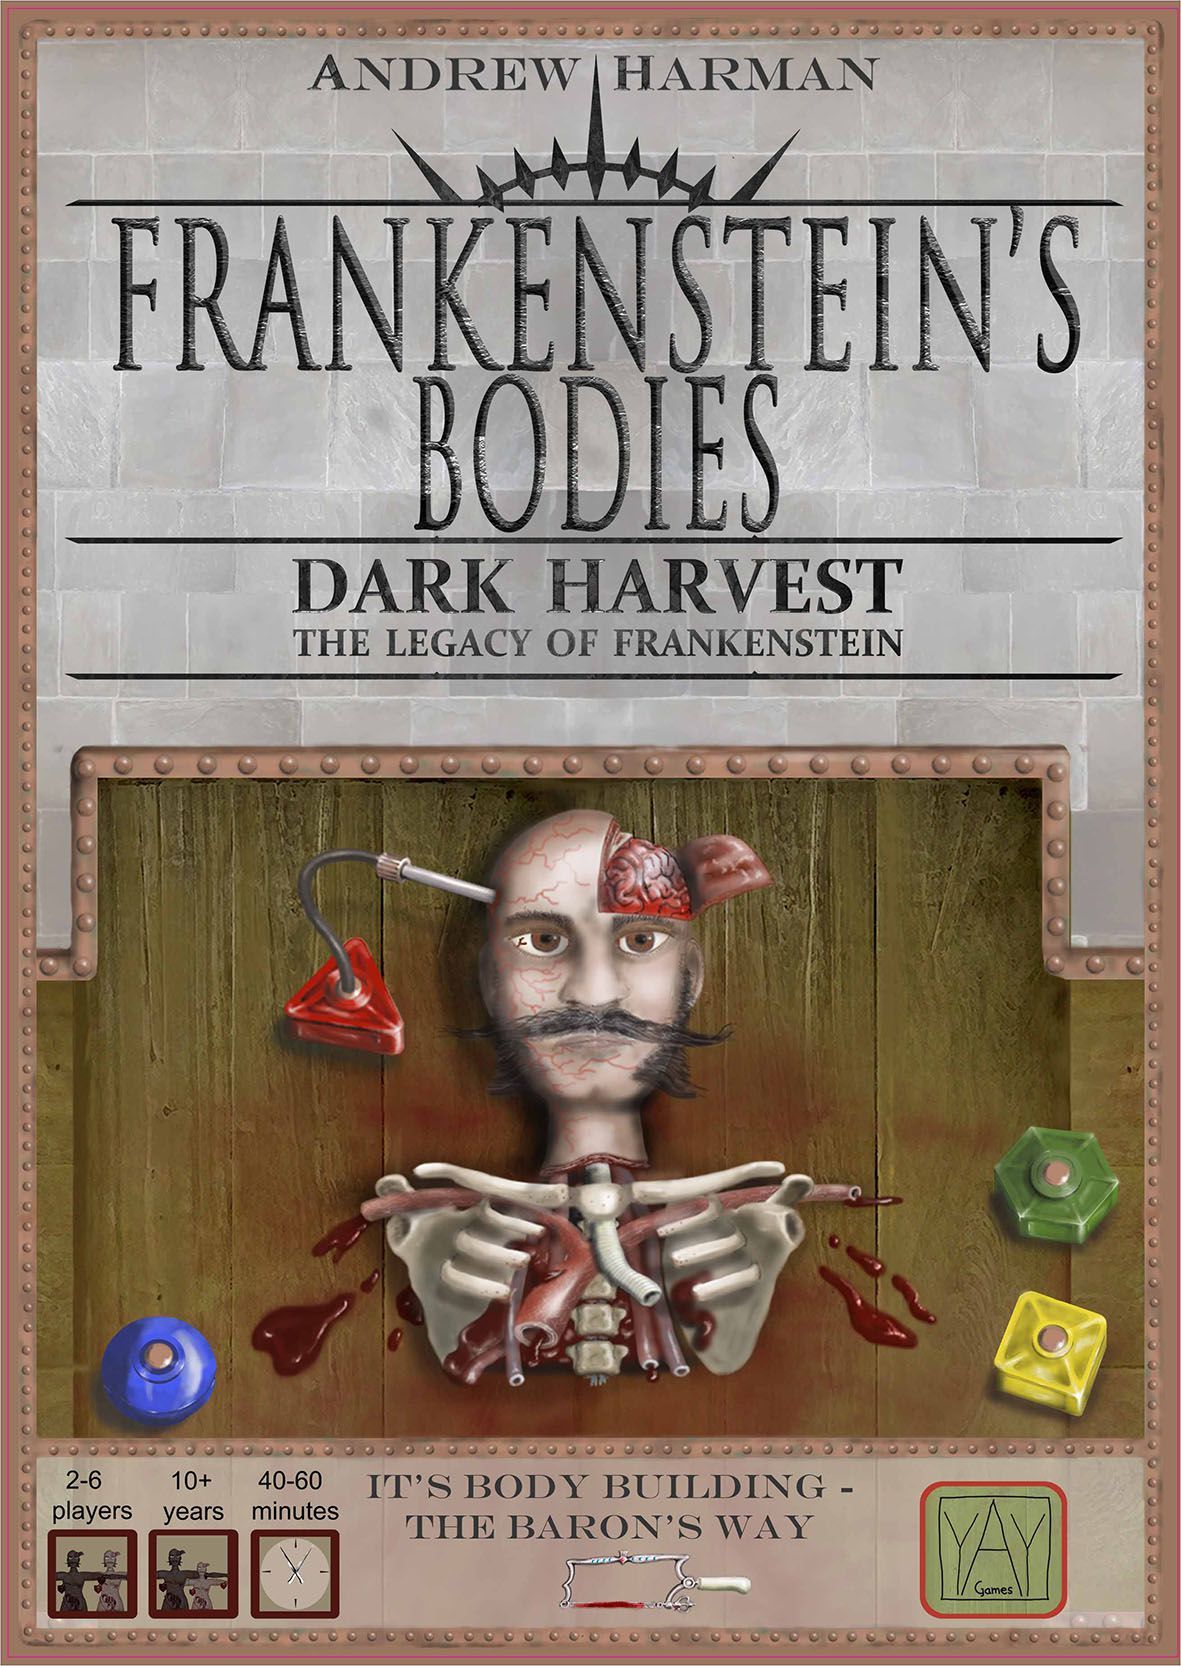 Frankensteins Bodies